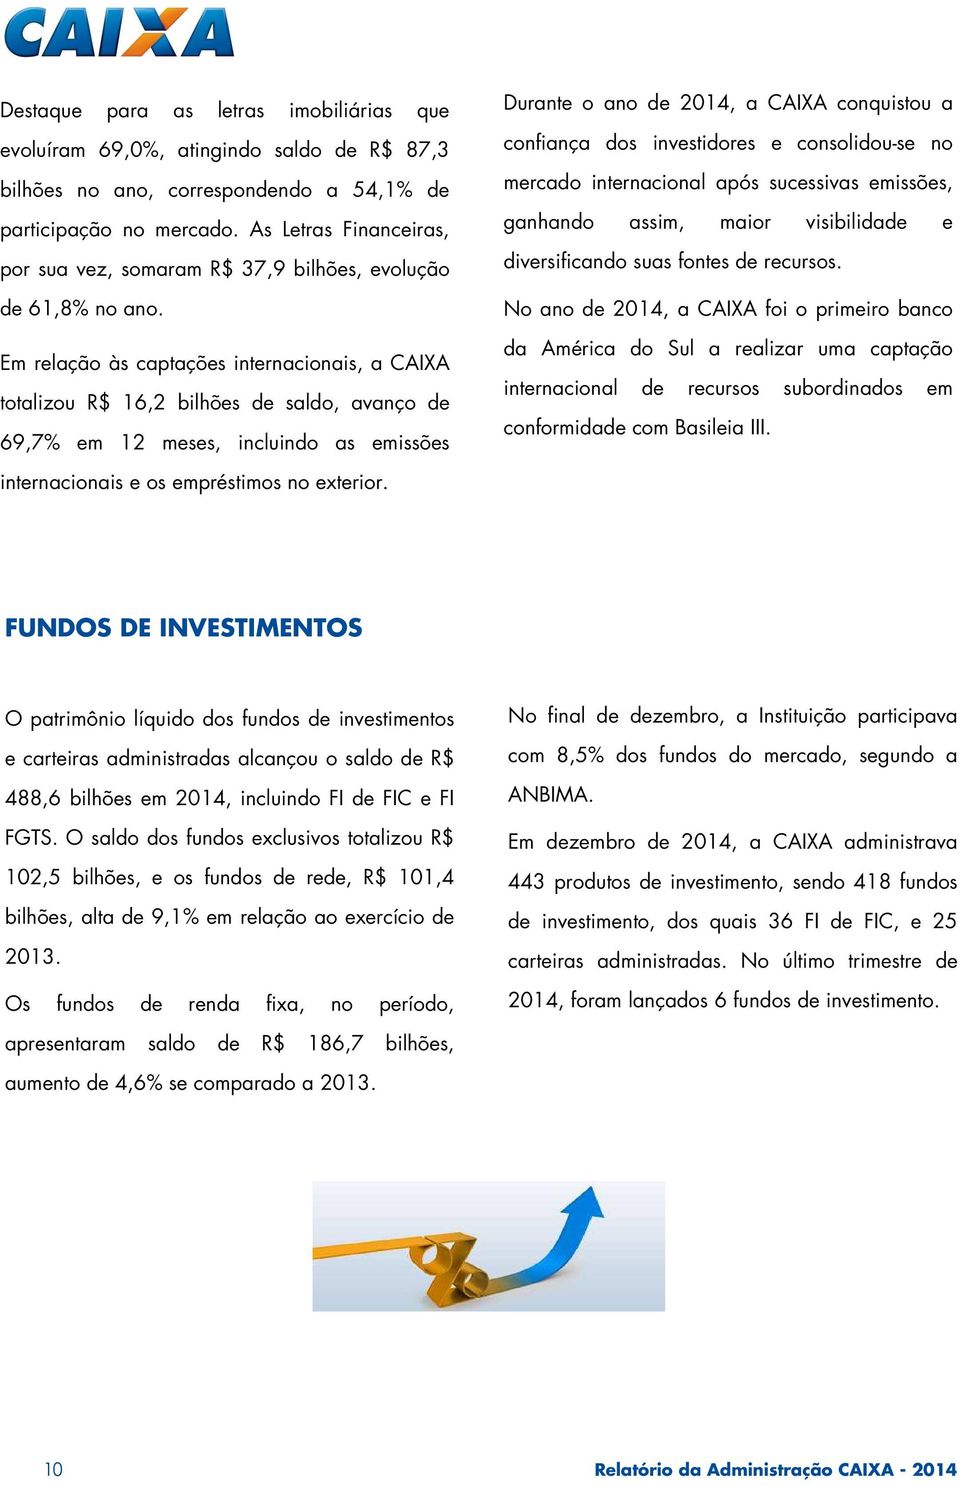 Em relação às captações internacionais, a CAIXA totalizou R$ 16,2 bilhões de saldo, avanço de 69,7% em 12 meses, incluindo as emissões Durante o ano de 2014, a CAIXA conquistou a confiança dos